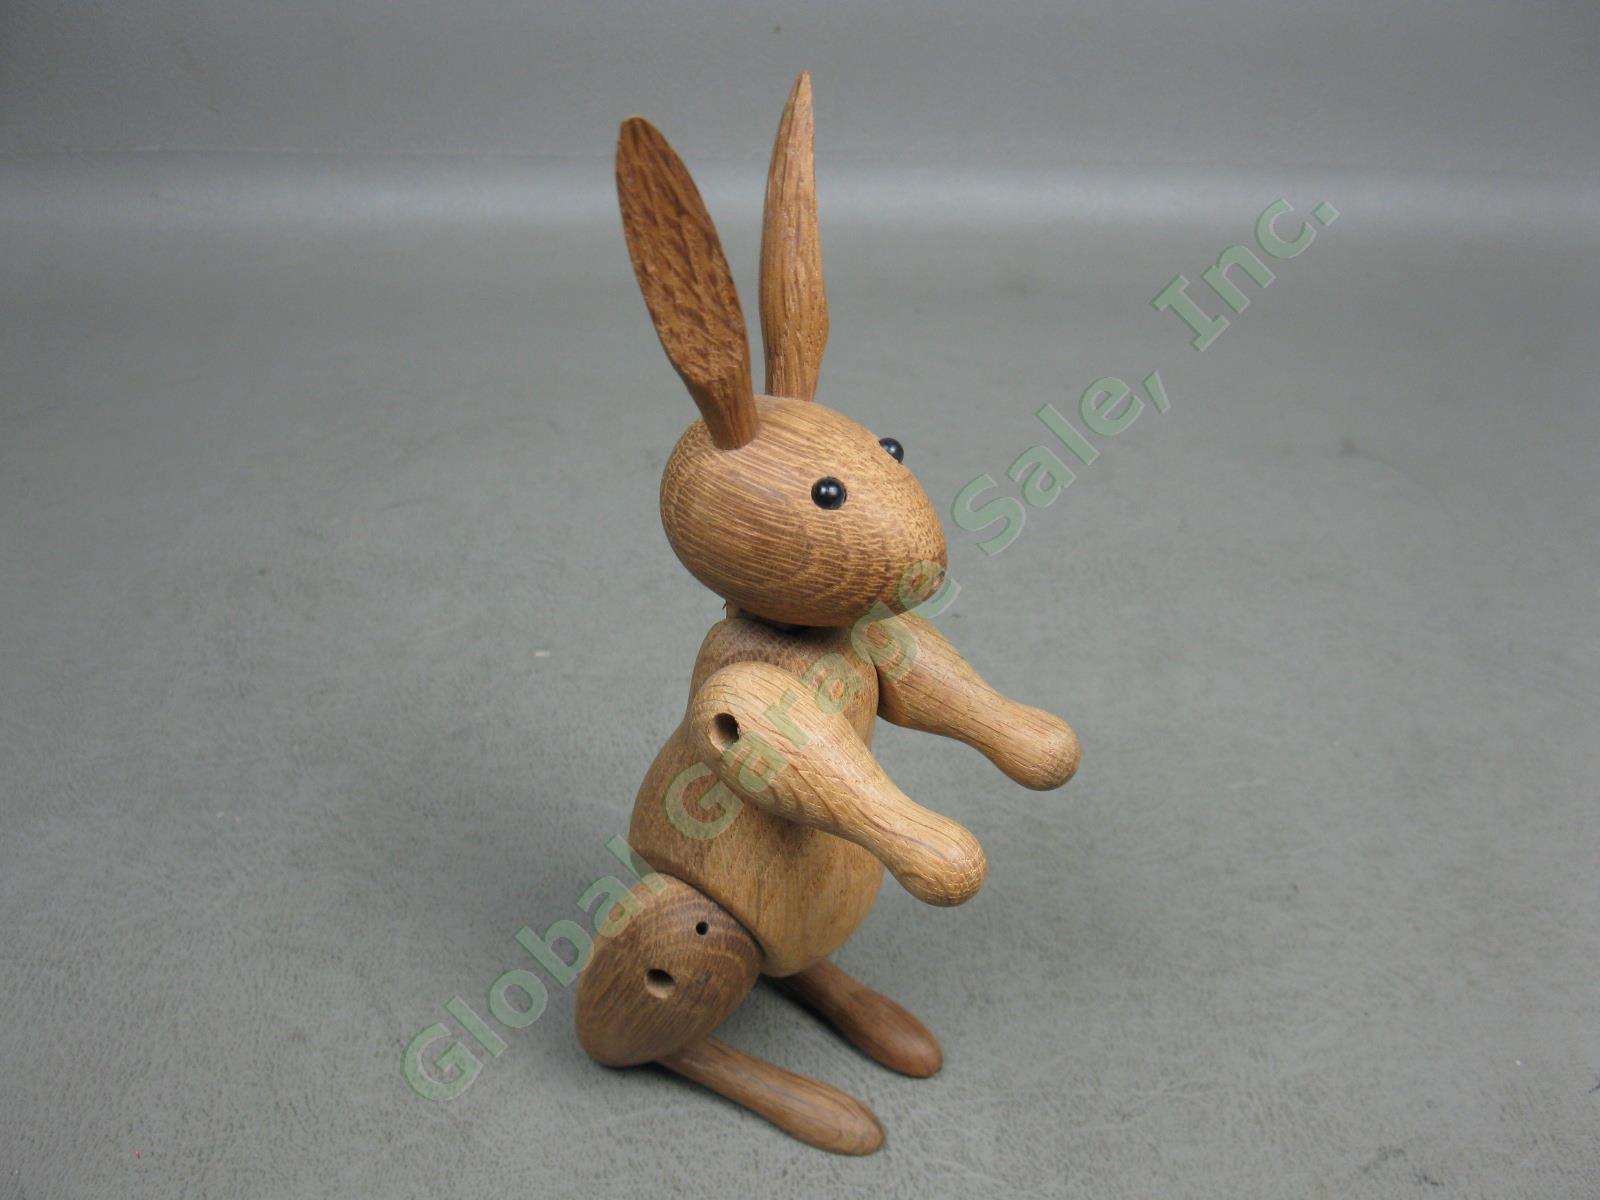 Vtg MCM Kay Bojesen Signed Jointed Danish Teak Wood Wooden Rabbit Toy Denmark NR 1